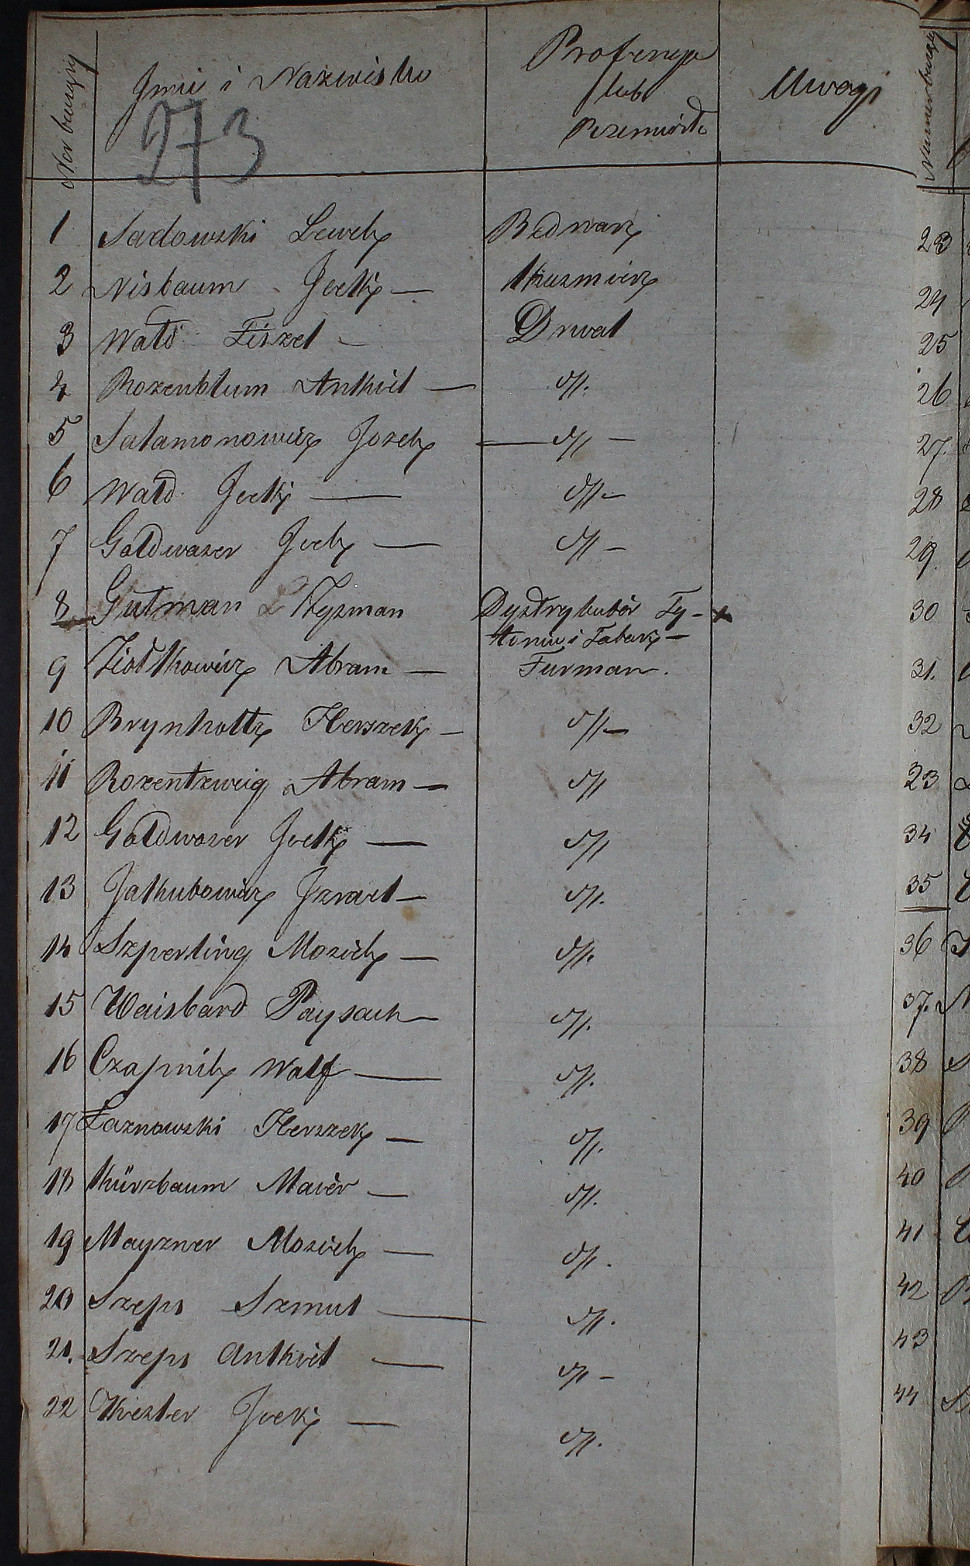 Lista fabrykantów, rękodzielników, rzemieślników i profesjonalistów, 1843